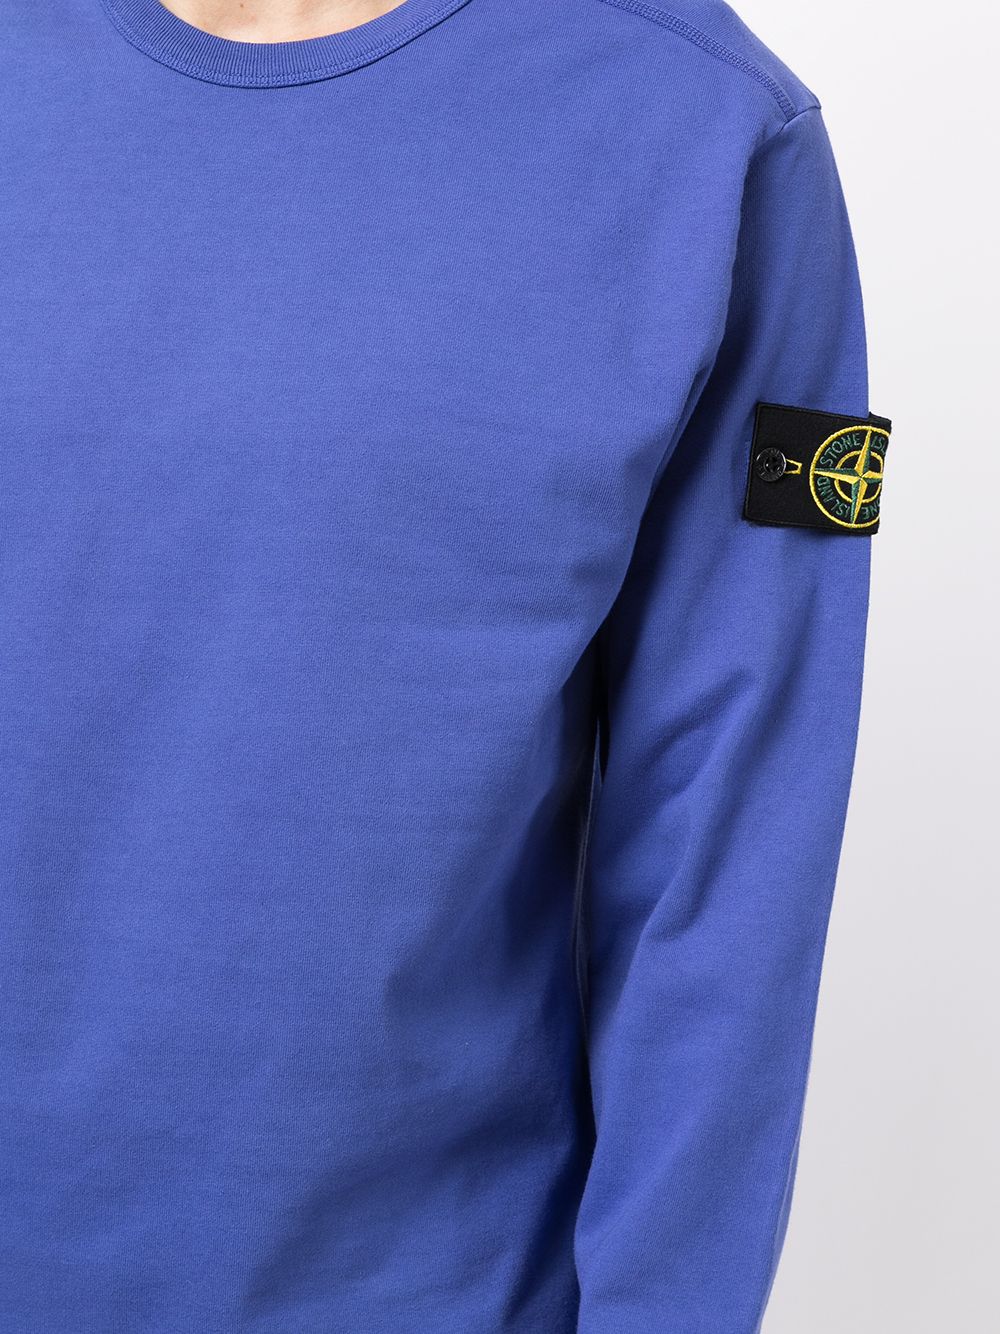 STONE ISLAND Long Sleeve T-Shirt Blue - MAISONDEFASHION.COM